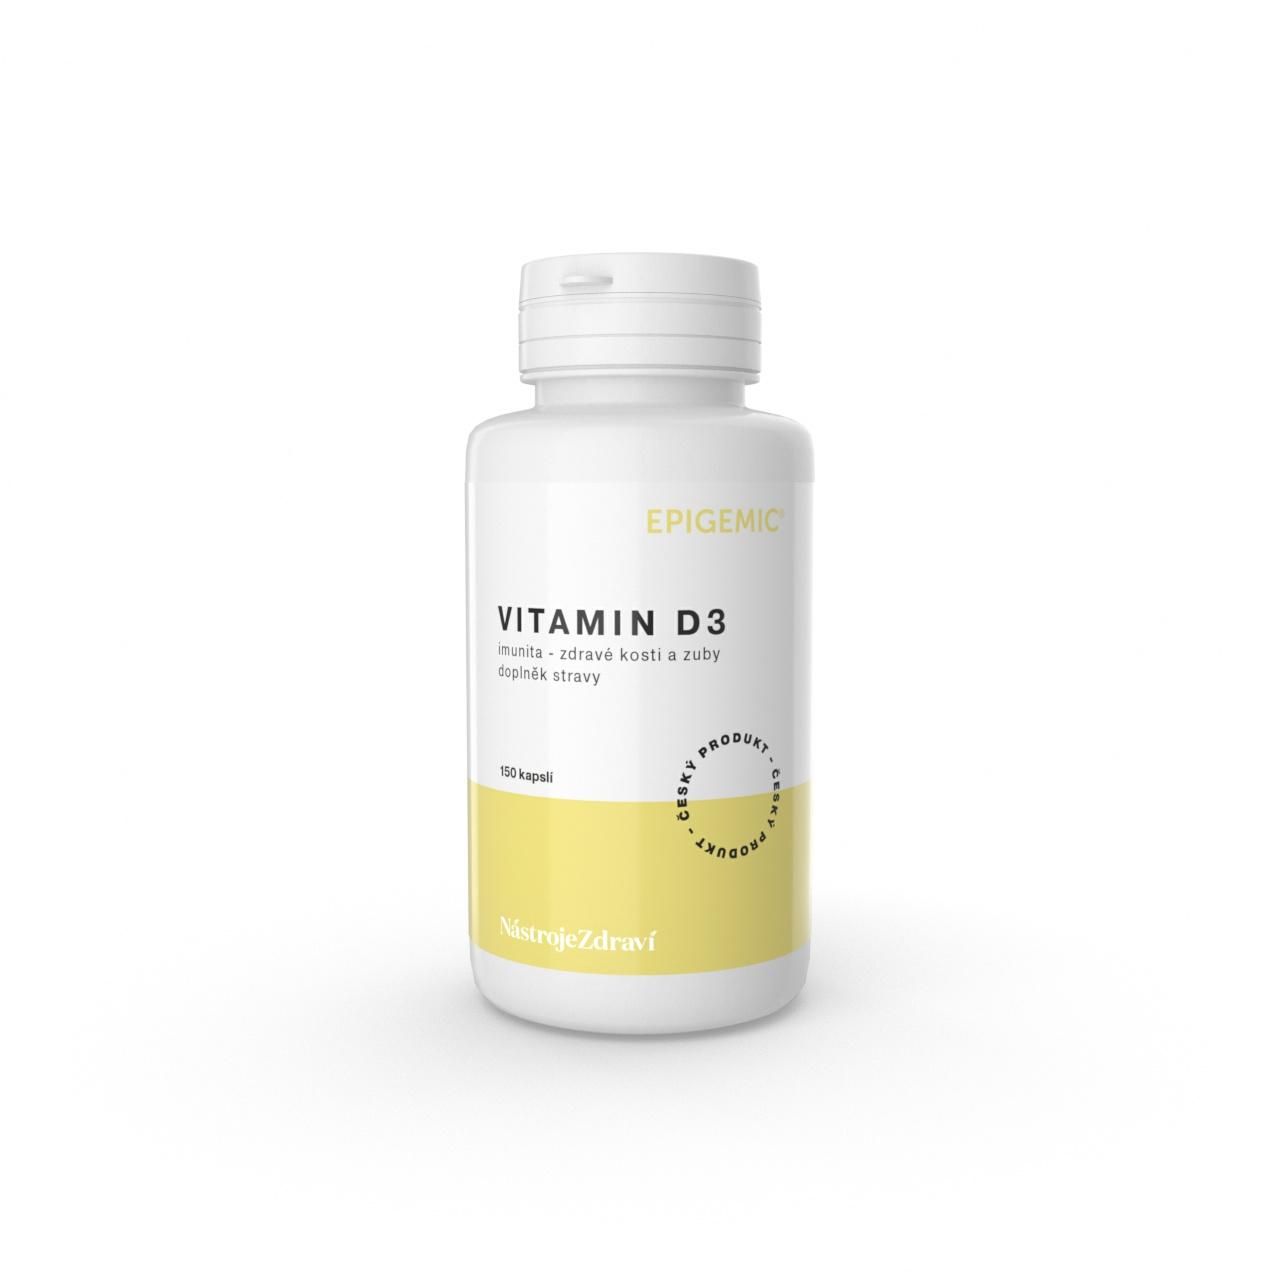 Epigemic Vitamin D3, kapsle 150 ks, 33 g